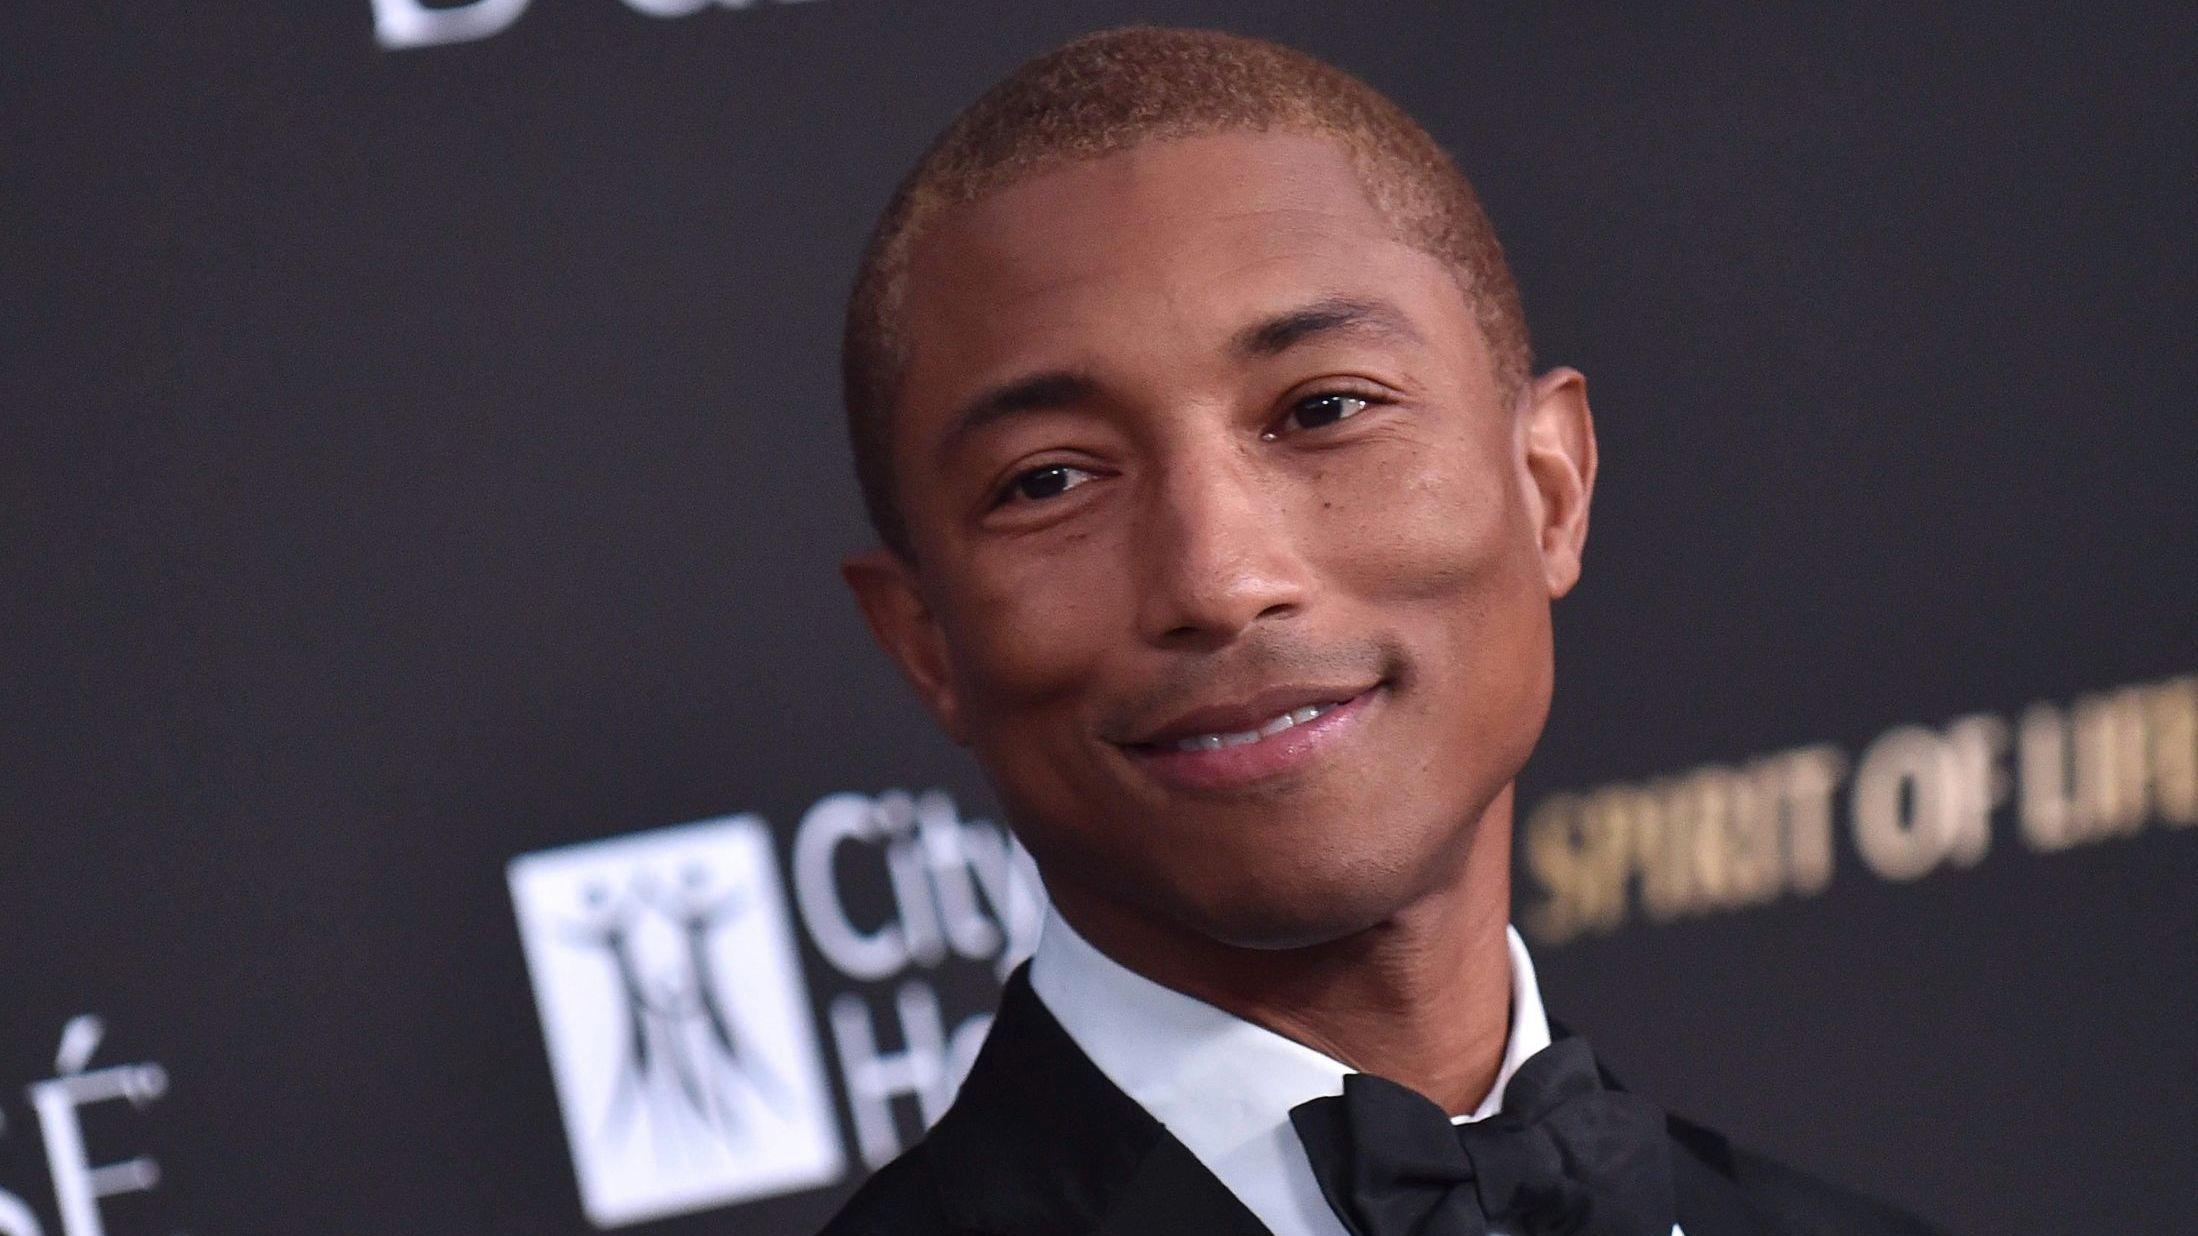 SUPERSTJERNE: Pharrell Williams er en av verdens mest kjente rappere, og gjør i disse dager stor suksess som musikkprodusent. Her på en galla i California tidligere i oktober. Foto: Lisa O'connor/AFP